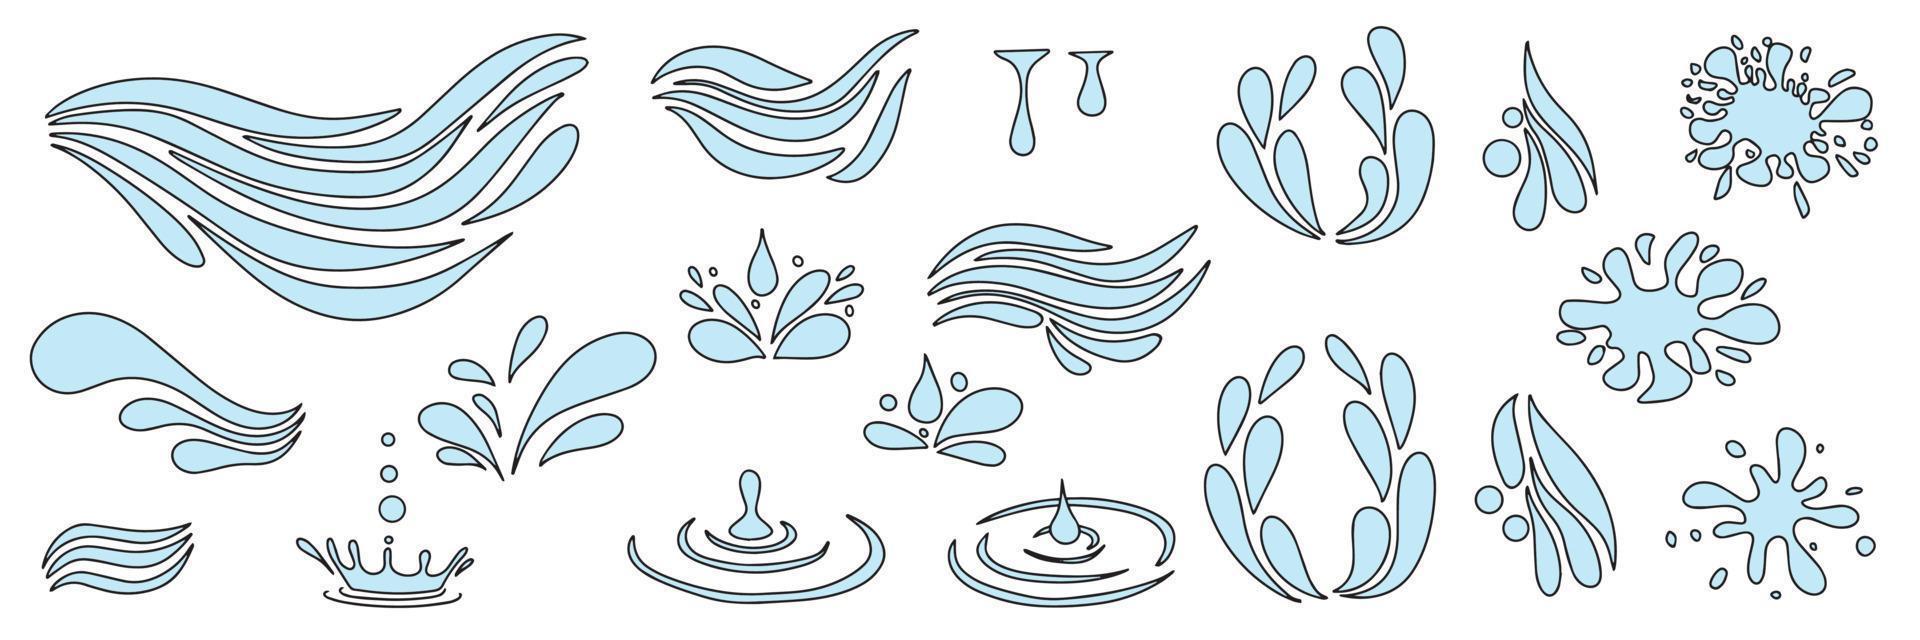 conjunto de onda e gota de água. estilo doodle em cores. ilustração vetorial. vetor